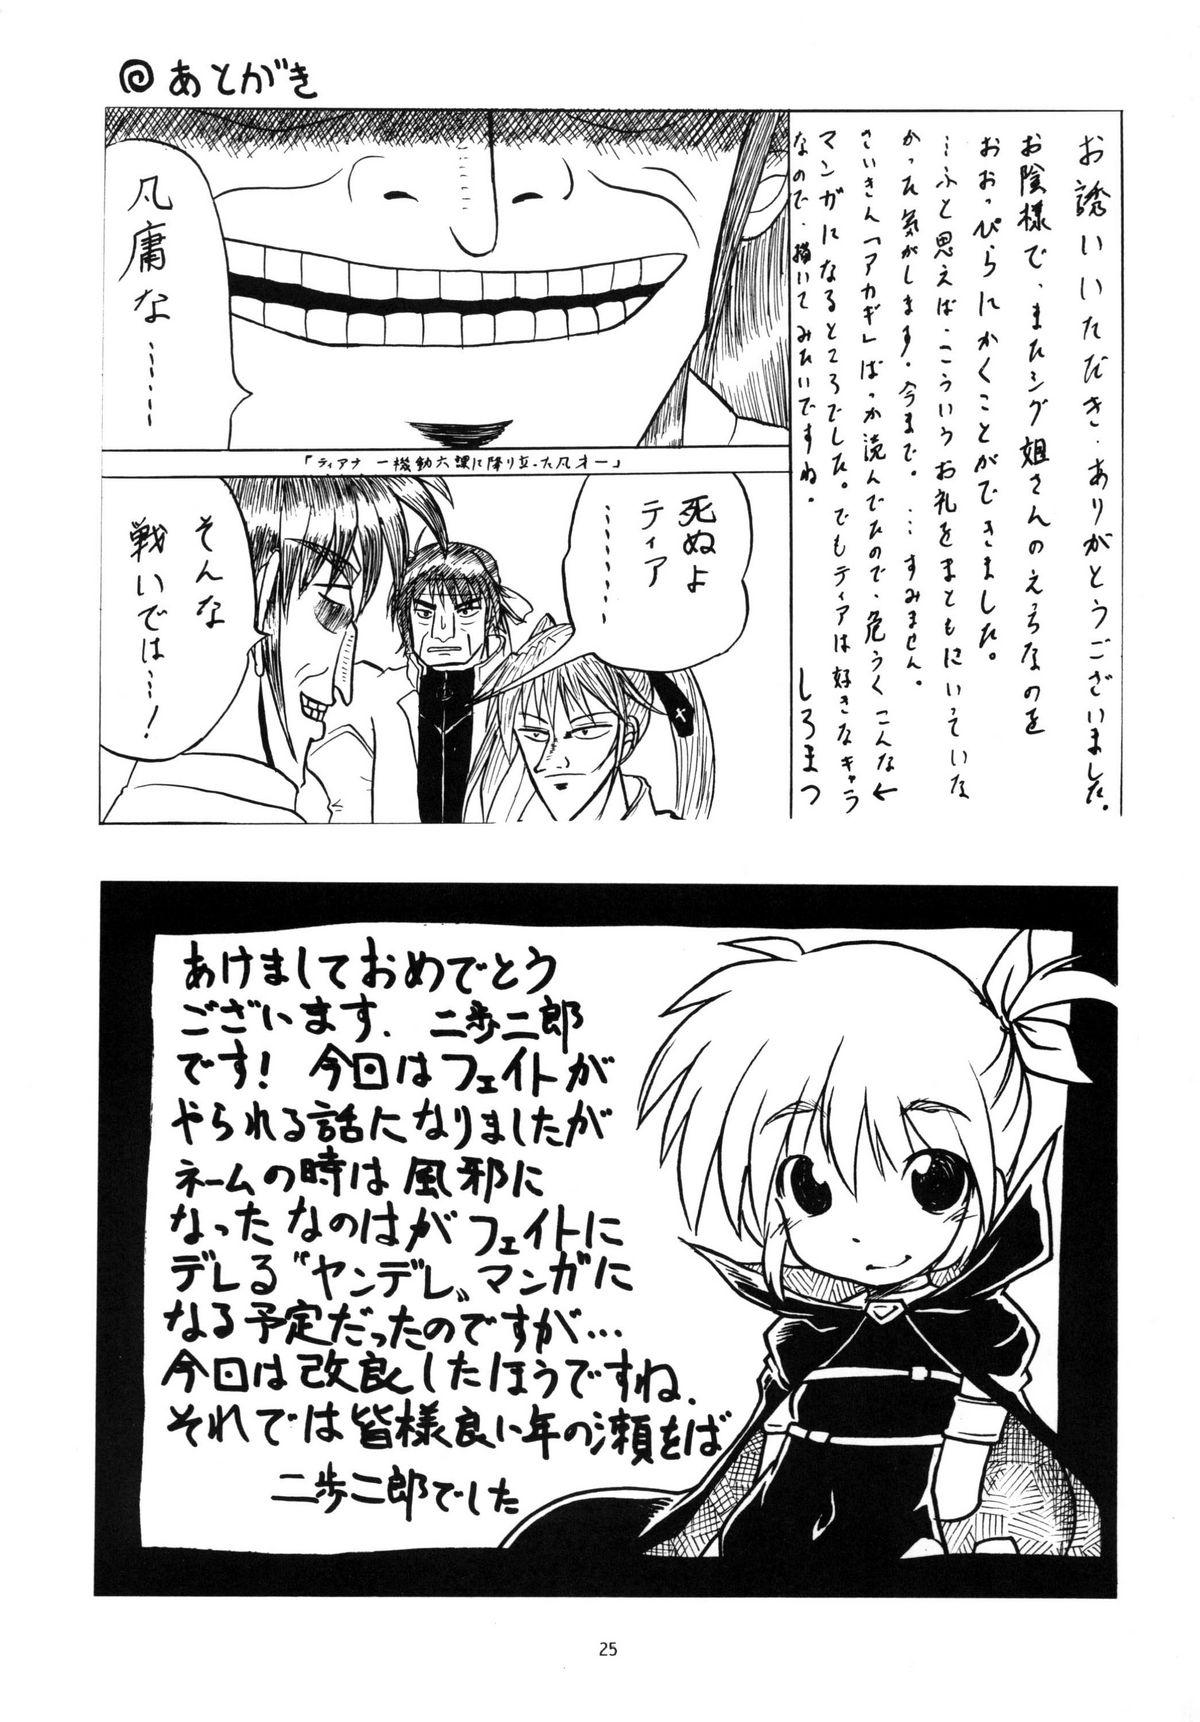 Bulge Vita AF - Mahou shoujo lyrical nanoha Animation - Page 25